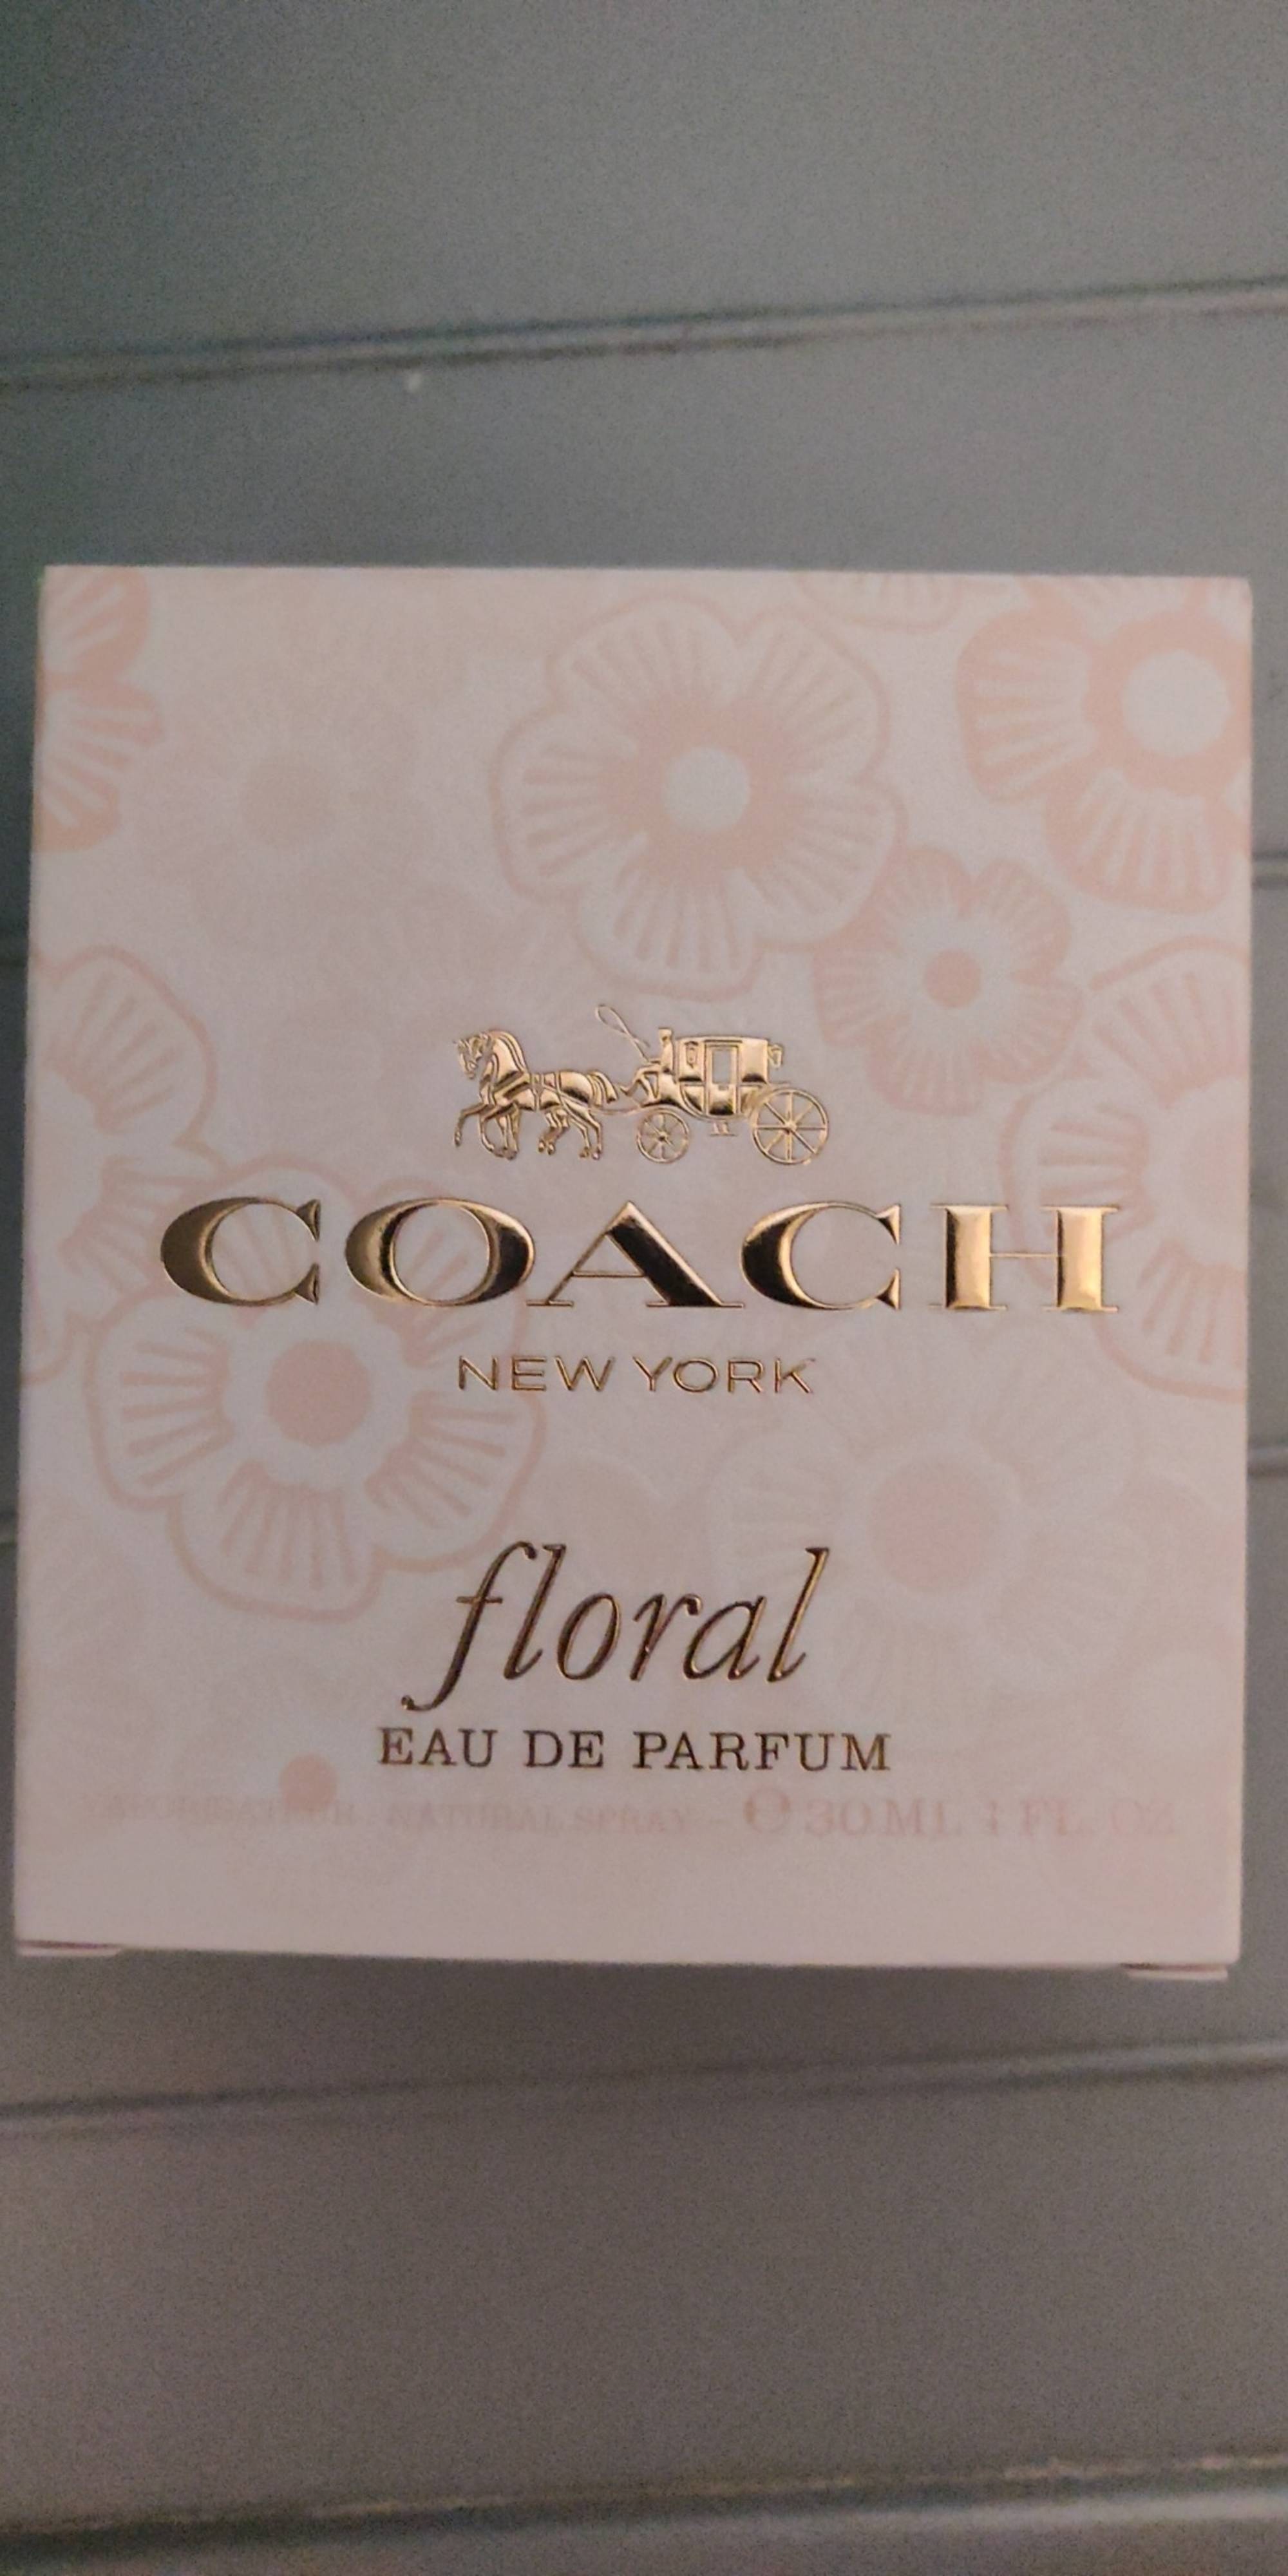 COACH - Floral - Eau de parfum